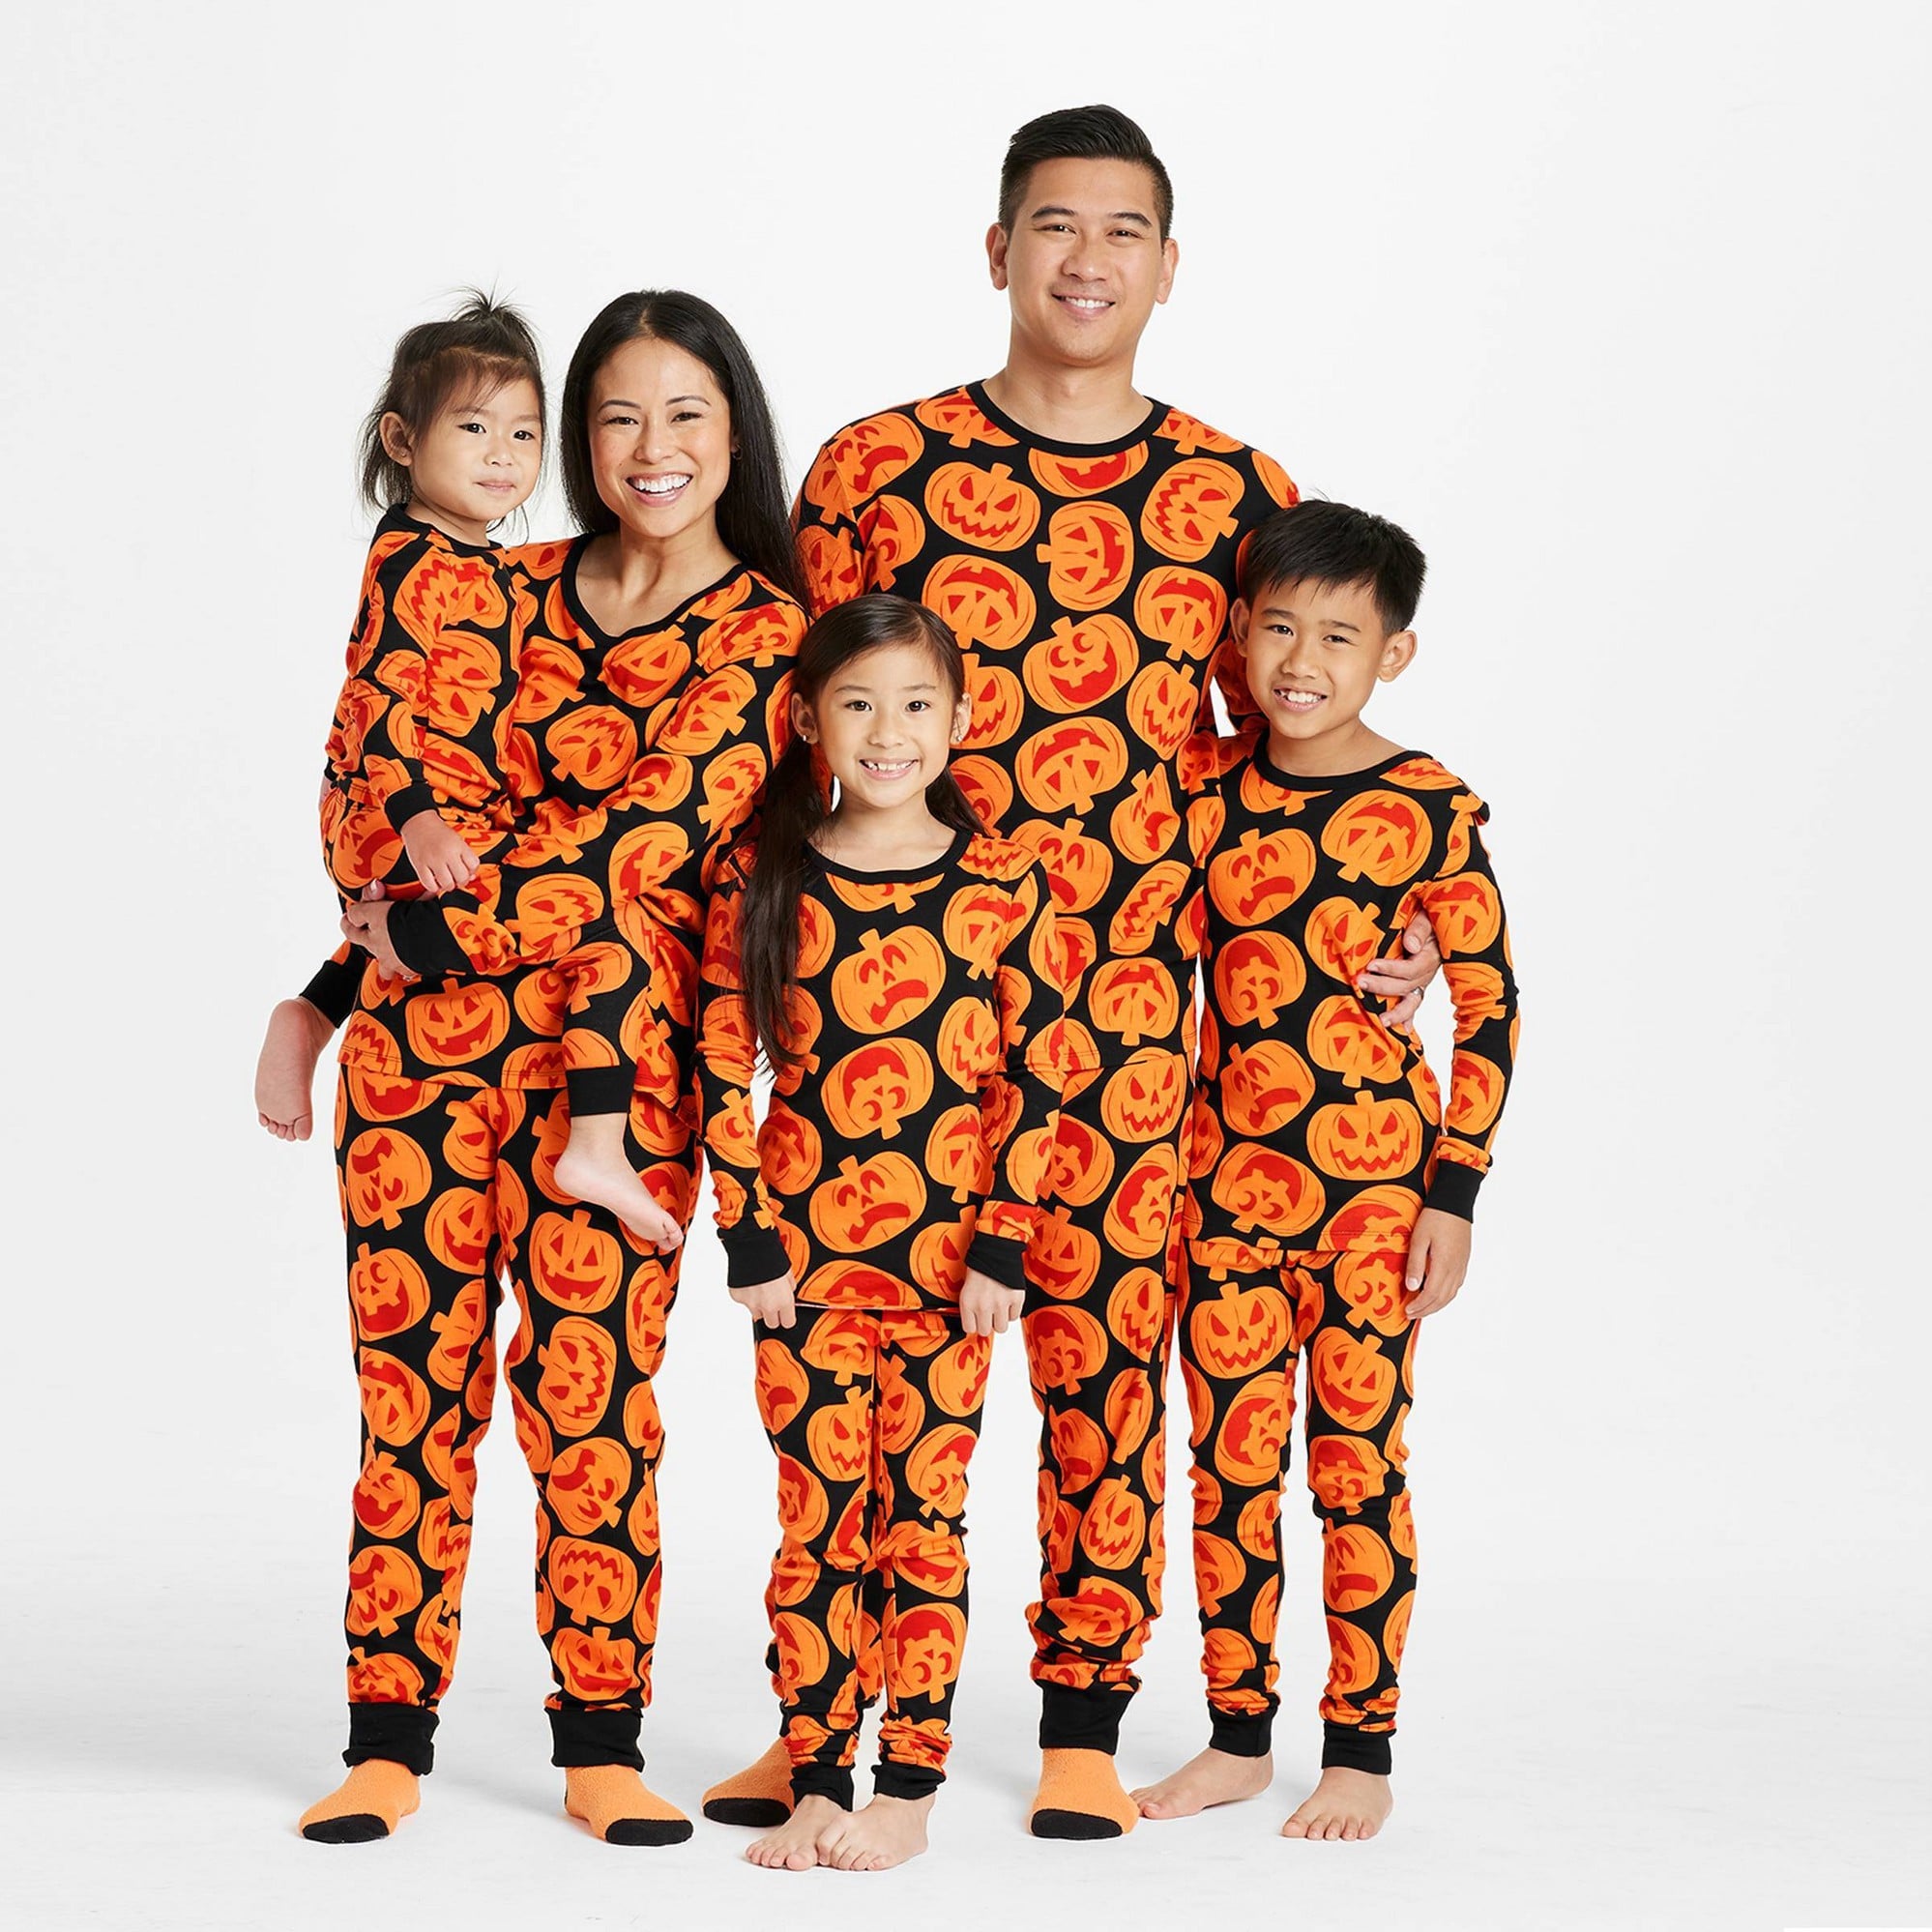 Spooky Halloween Pumpkins Print Loungewear Pyjama Bottoms Pants Fancy Dress  